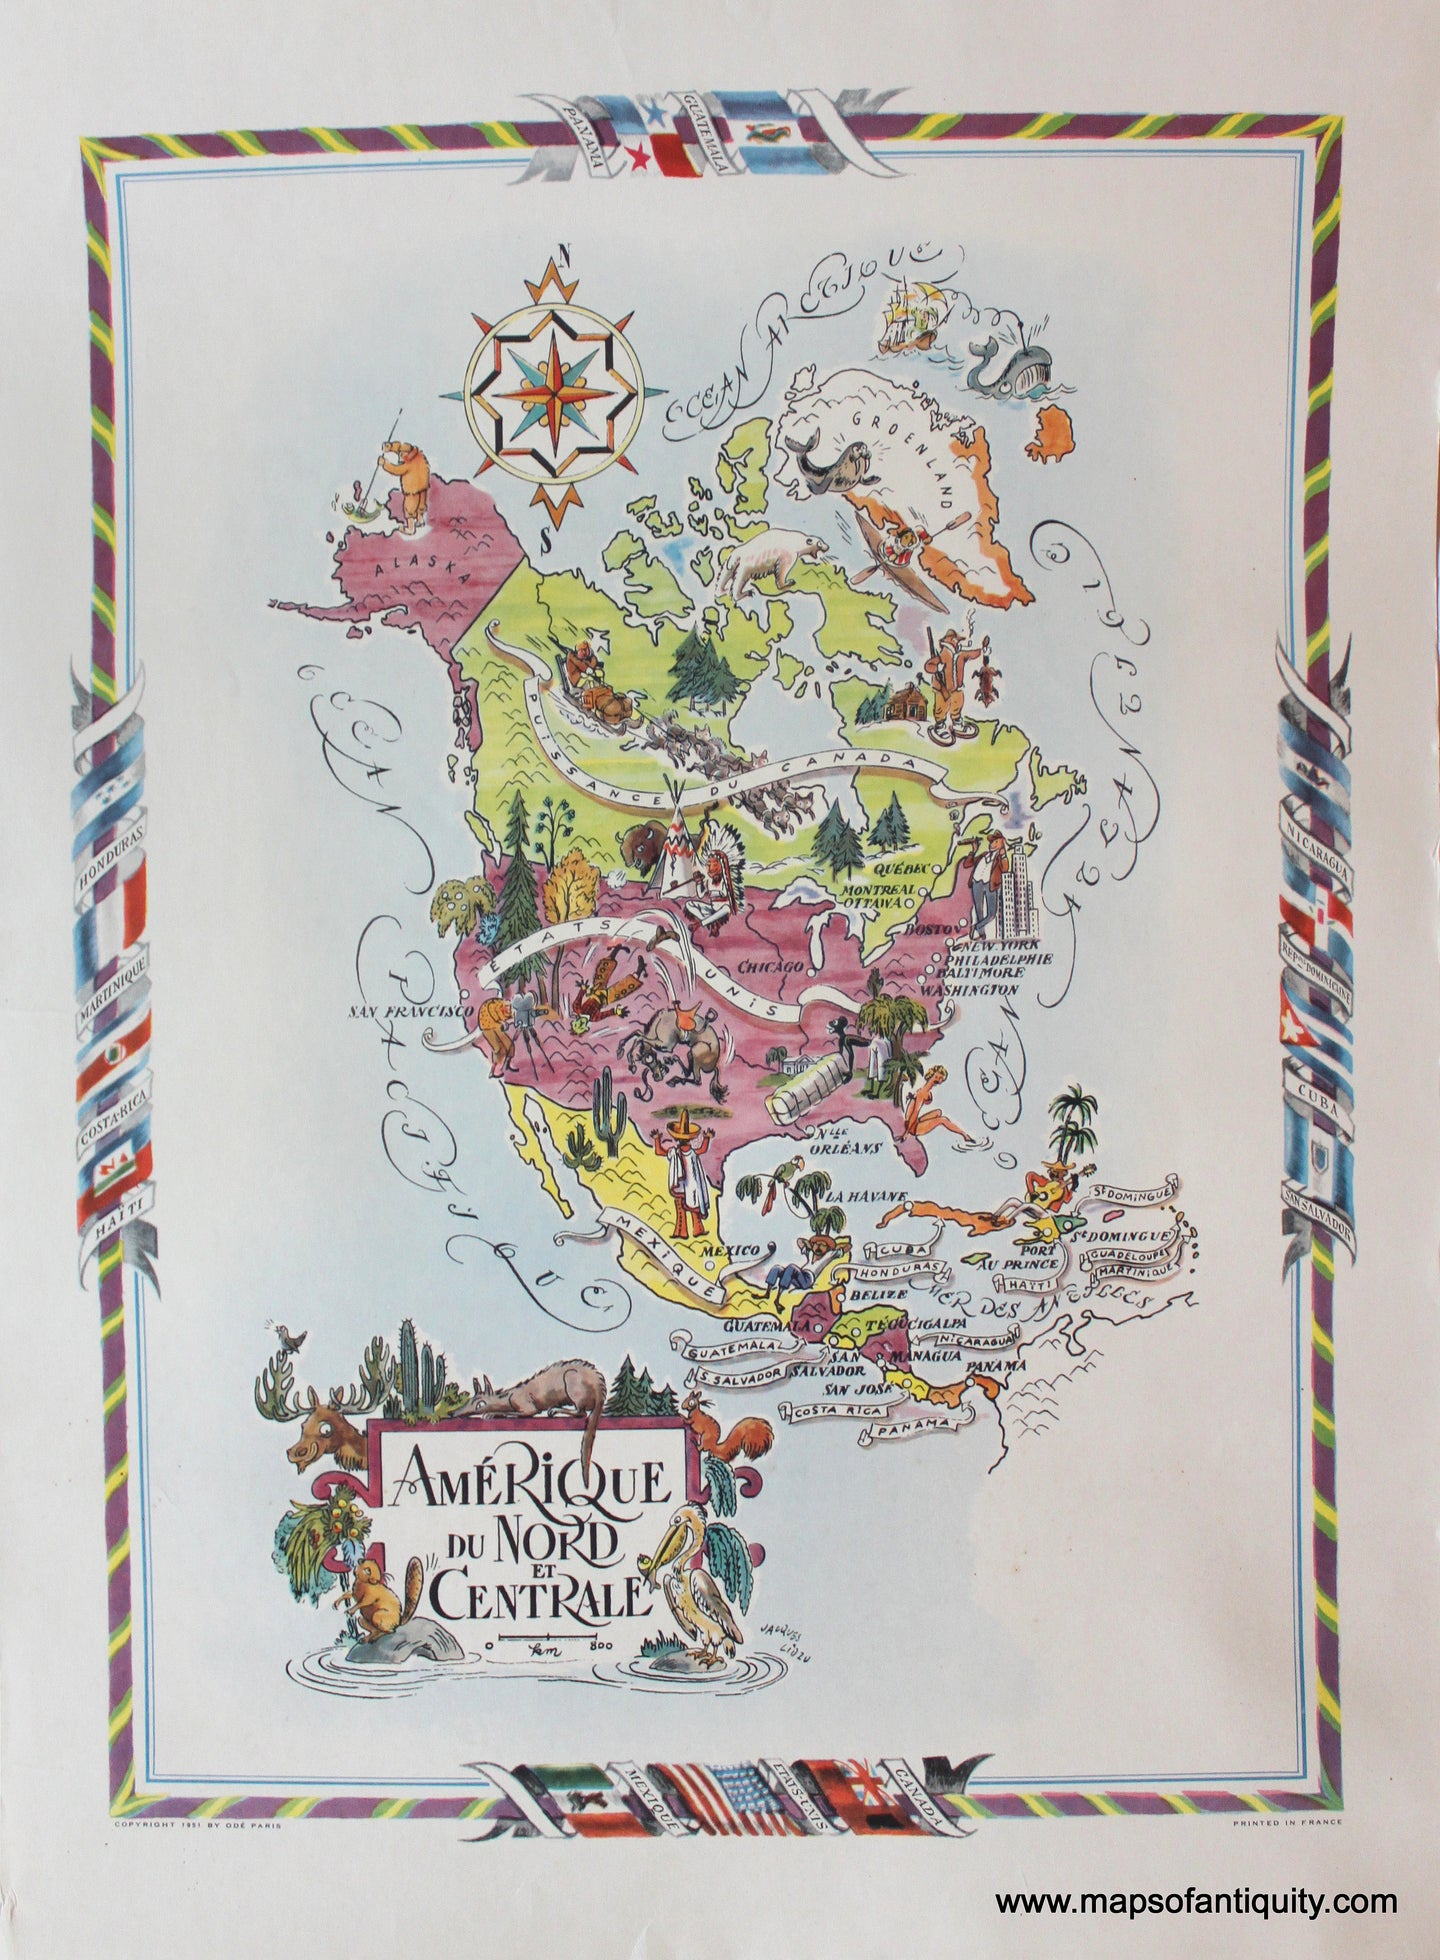 Antique-Printed-Color-Pictorial-Map-Amerique-du-Nord-et-Centrale-1951-Jacques-Liozu-1900s-20th-century-Maps-of-Antiquity